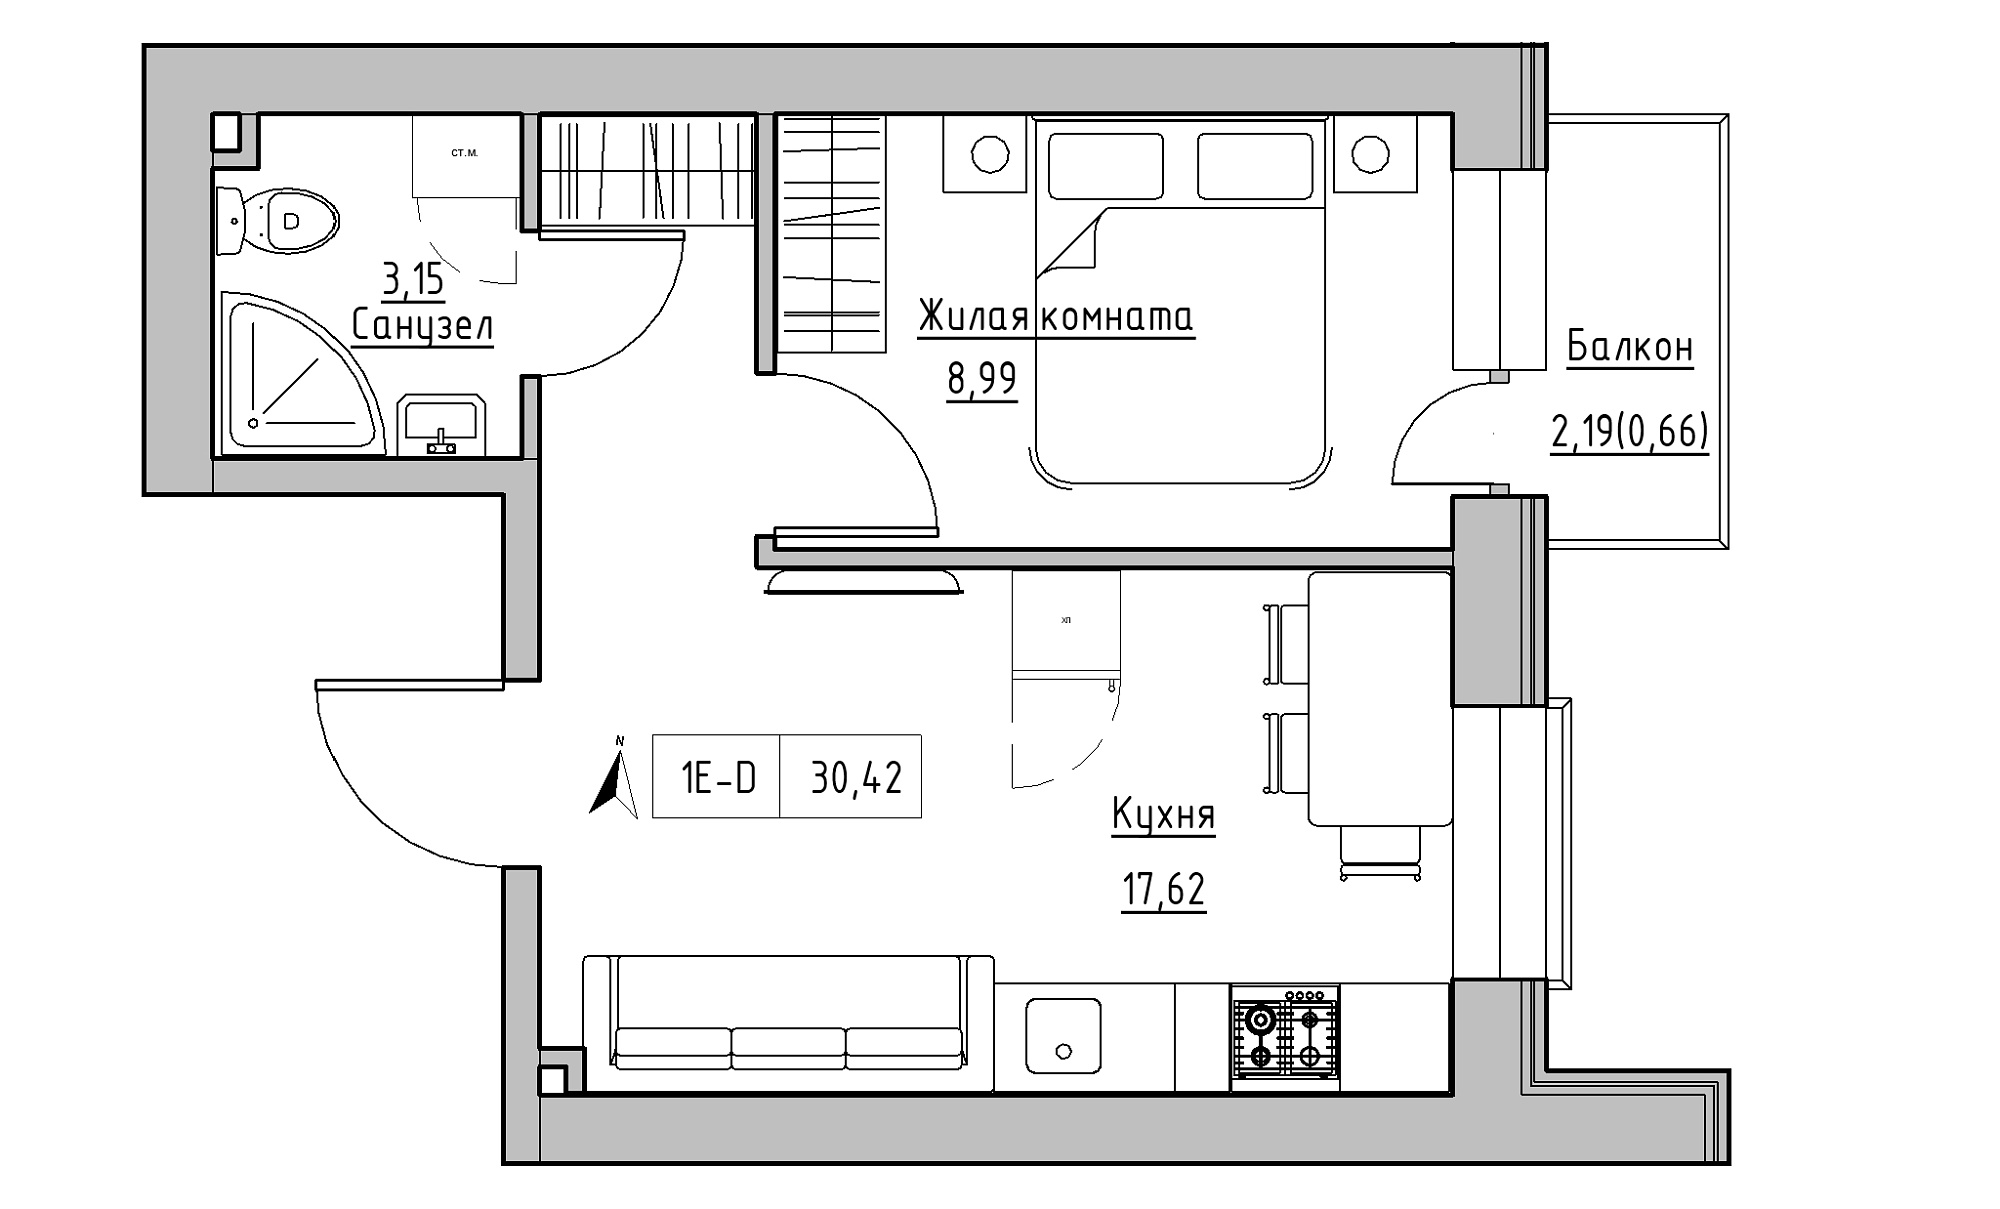 Планування 1-к квартира площею 30.42м2, KS-016-05/0016.